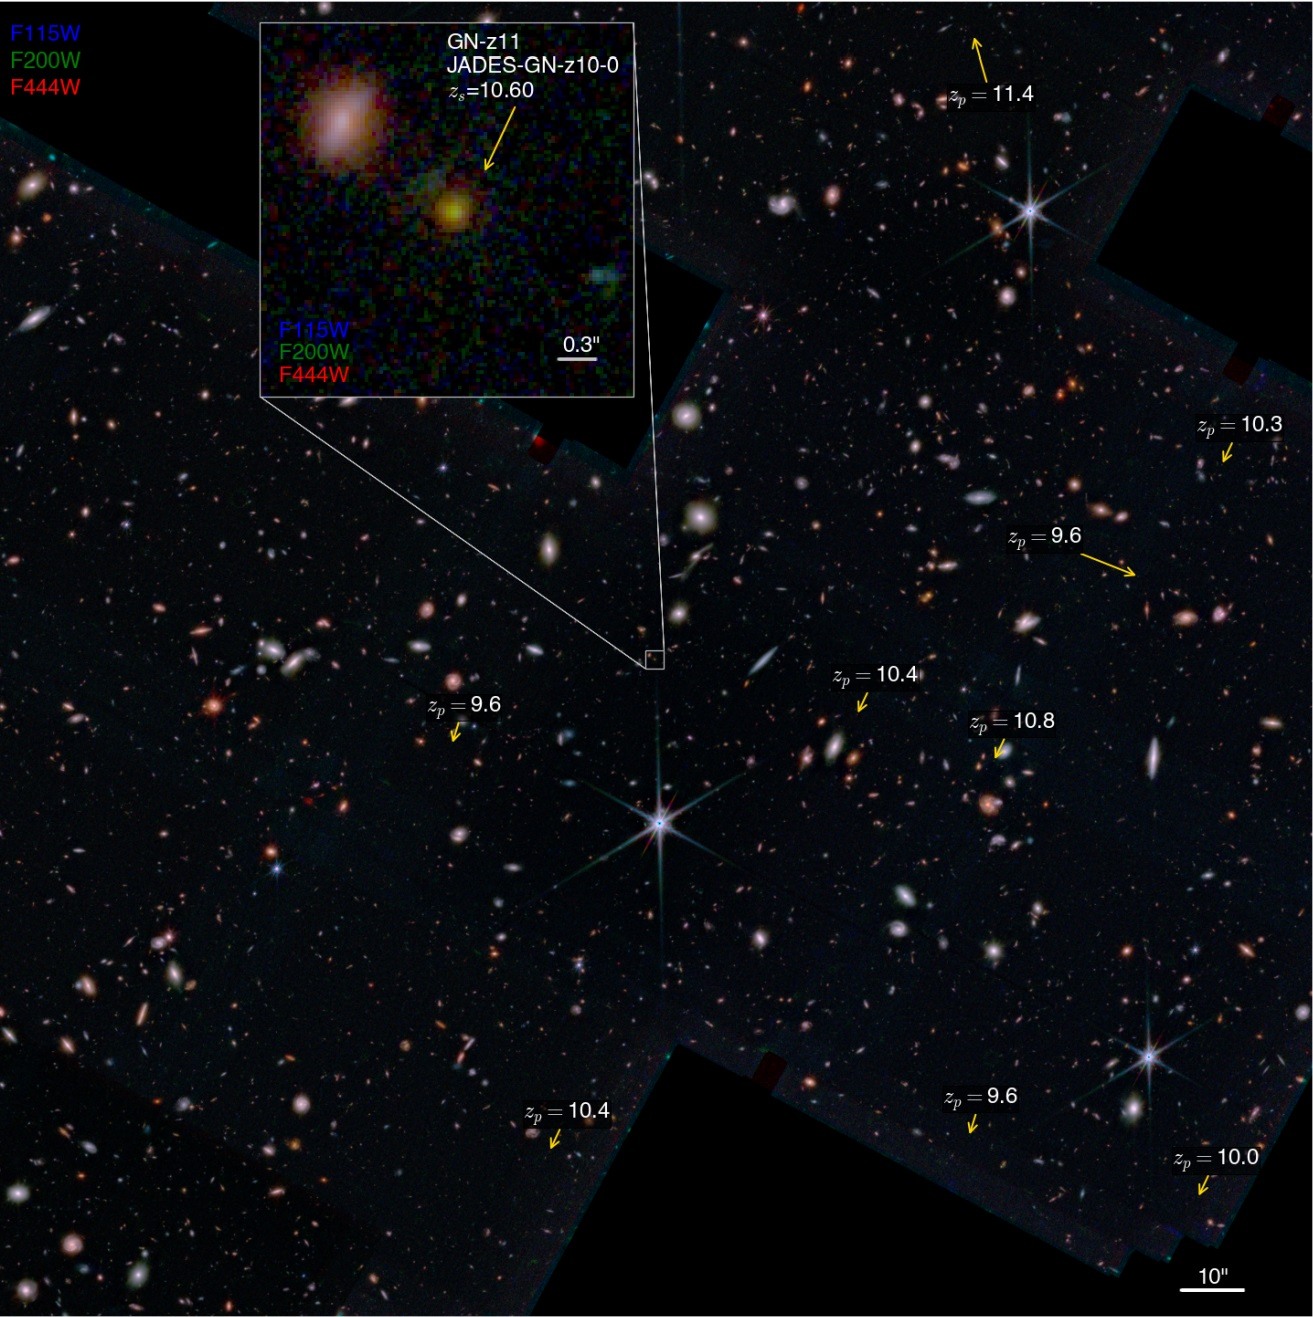 Webb maakt spectrum van GN-z11, tot voor kort het verst verwijderde sterrenstelsel in het heelal